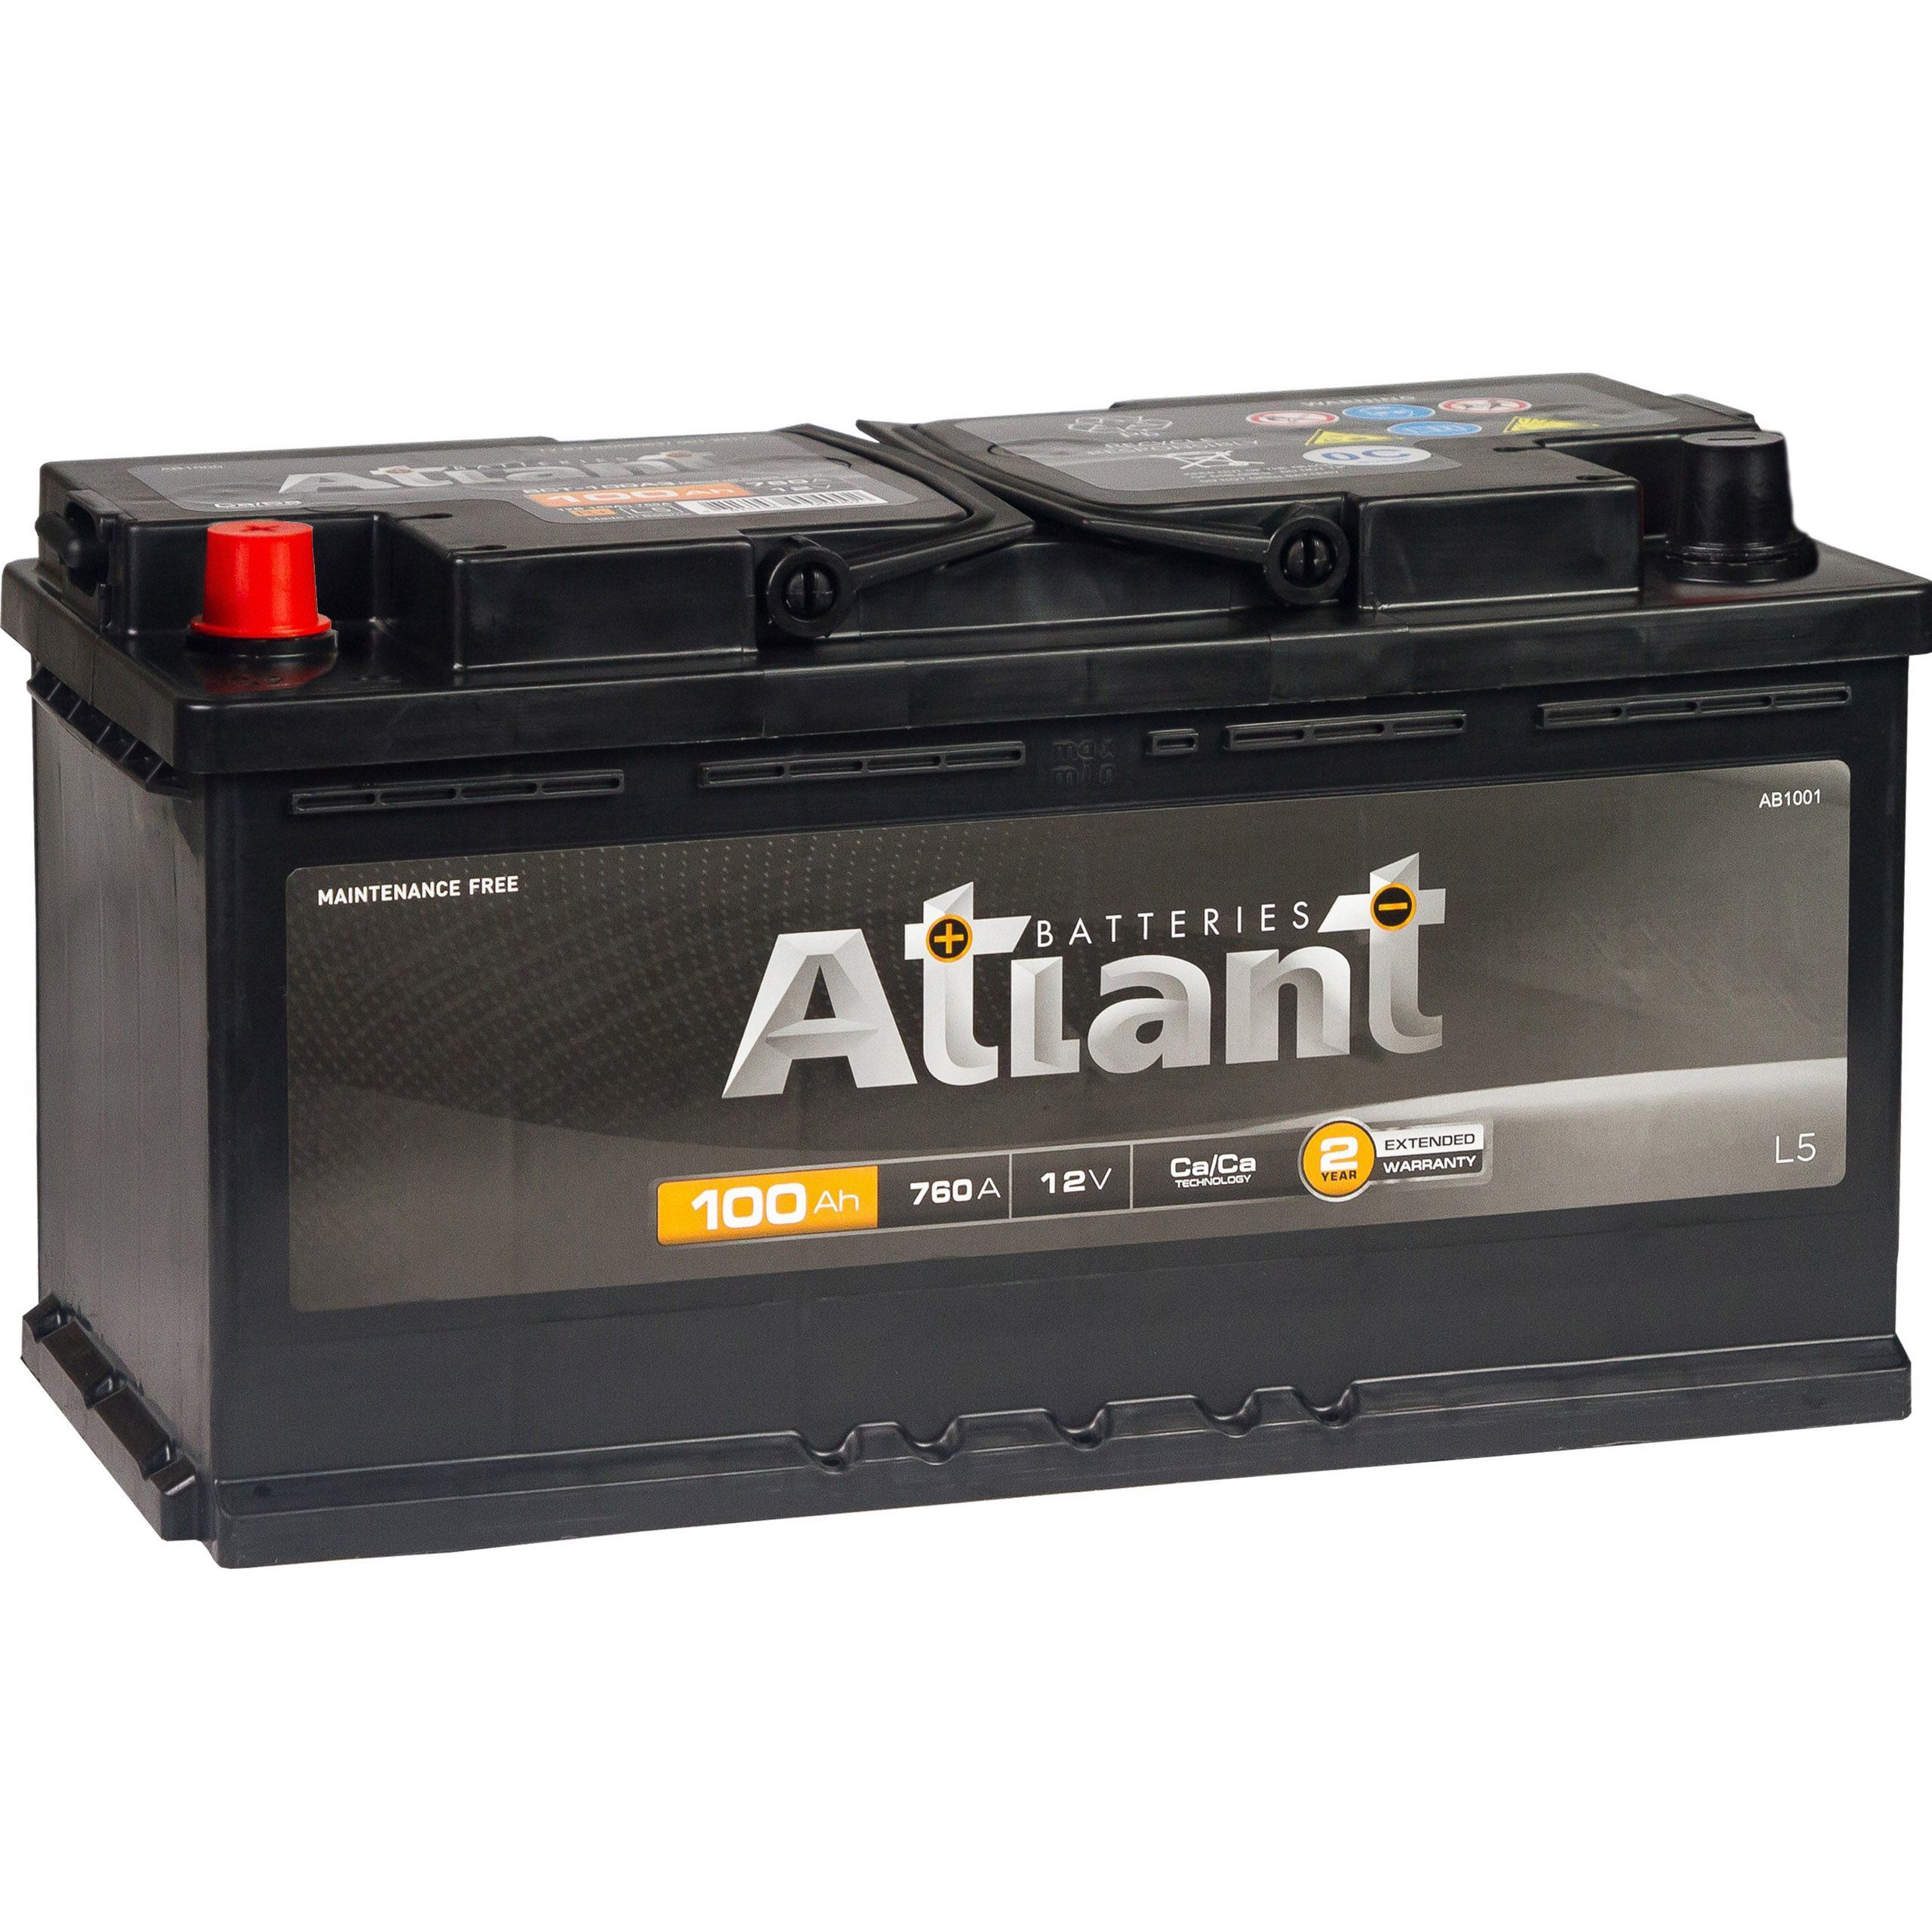 Аккумулятор автомобильный ATLANT Black 100 Ач 760 А прямая полярность AB1001